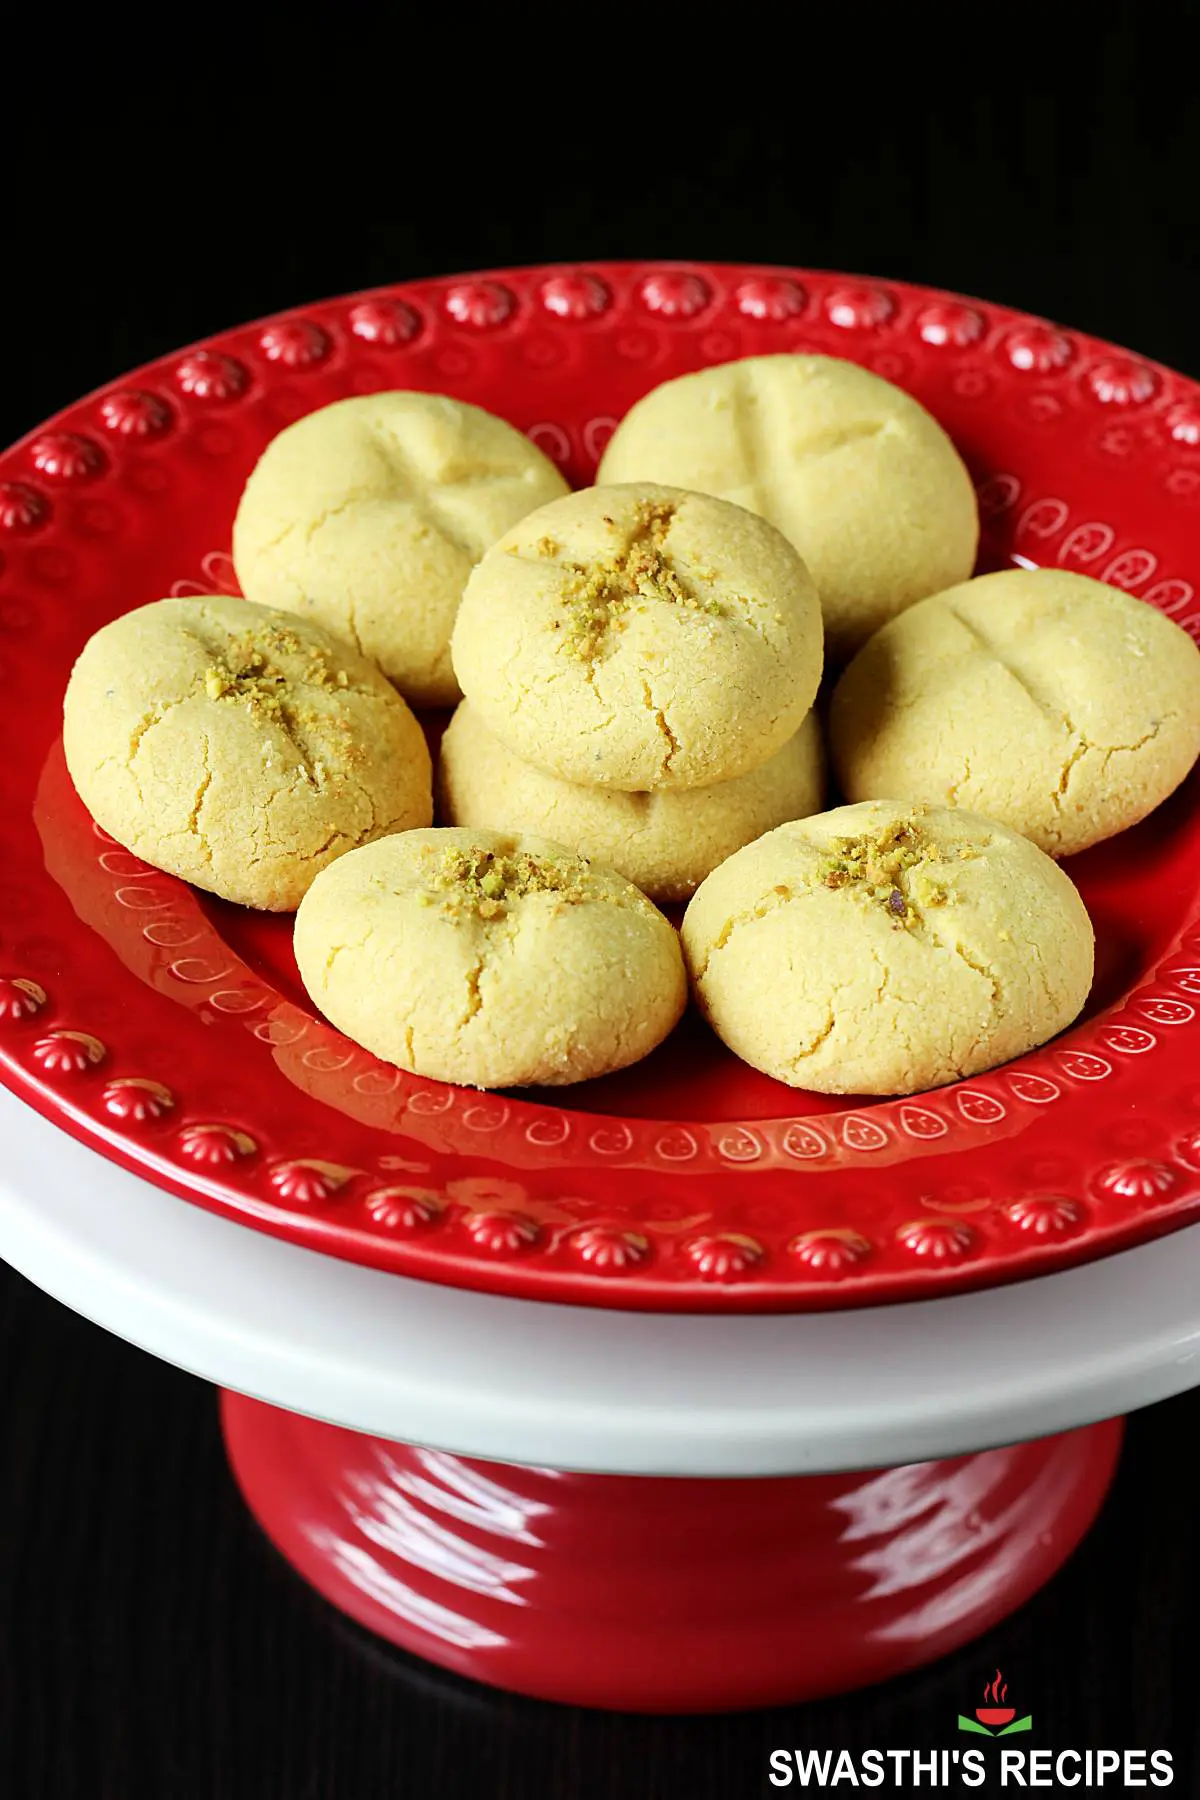 nankhatai are Indian eggless cookies